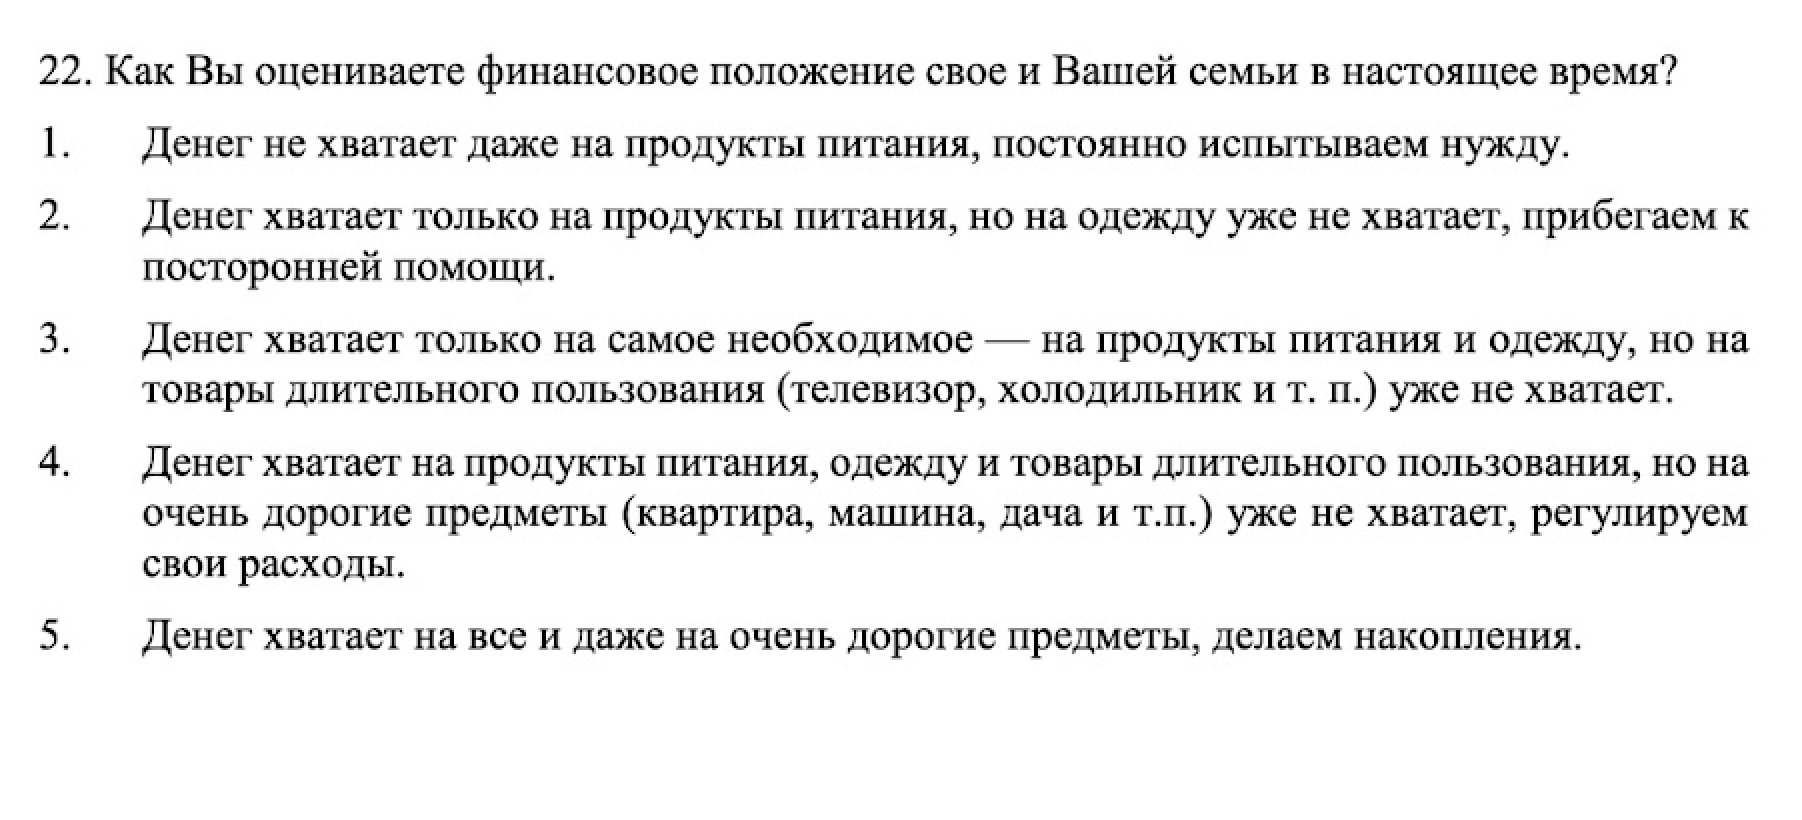 Пример операционализации для переменной «экономический статус». Источник: studylib.ru